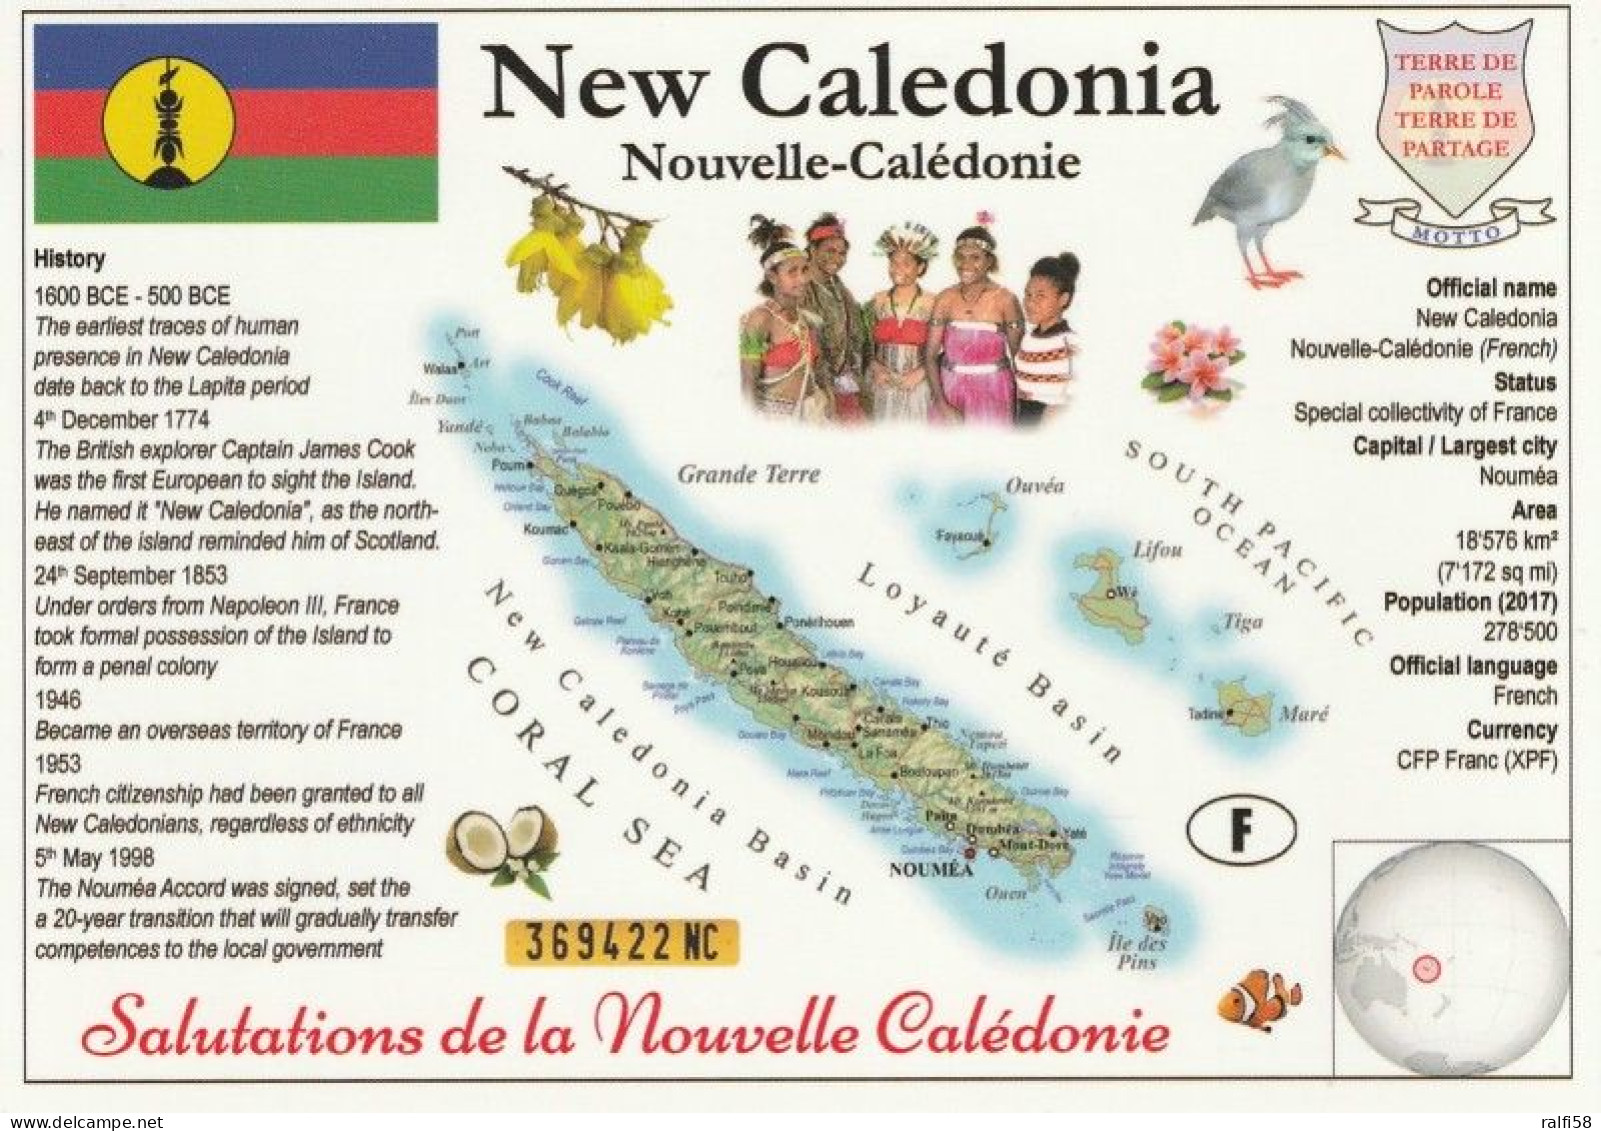 1 Map Of New Caledonia * 1 Ansichtskarte Mit Der Landkarte Von Neukaledonien Mit Informationen Und Der Flagge Des Landes - Maps